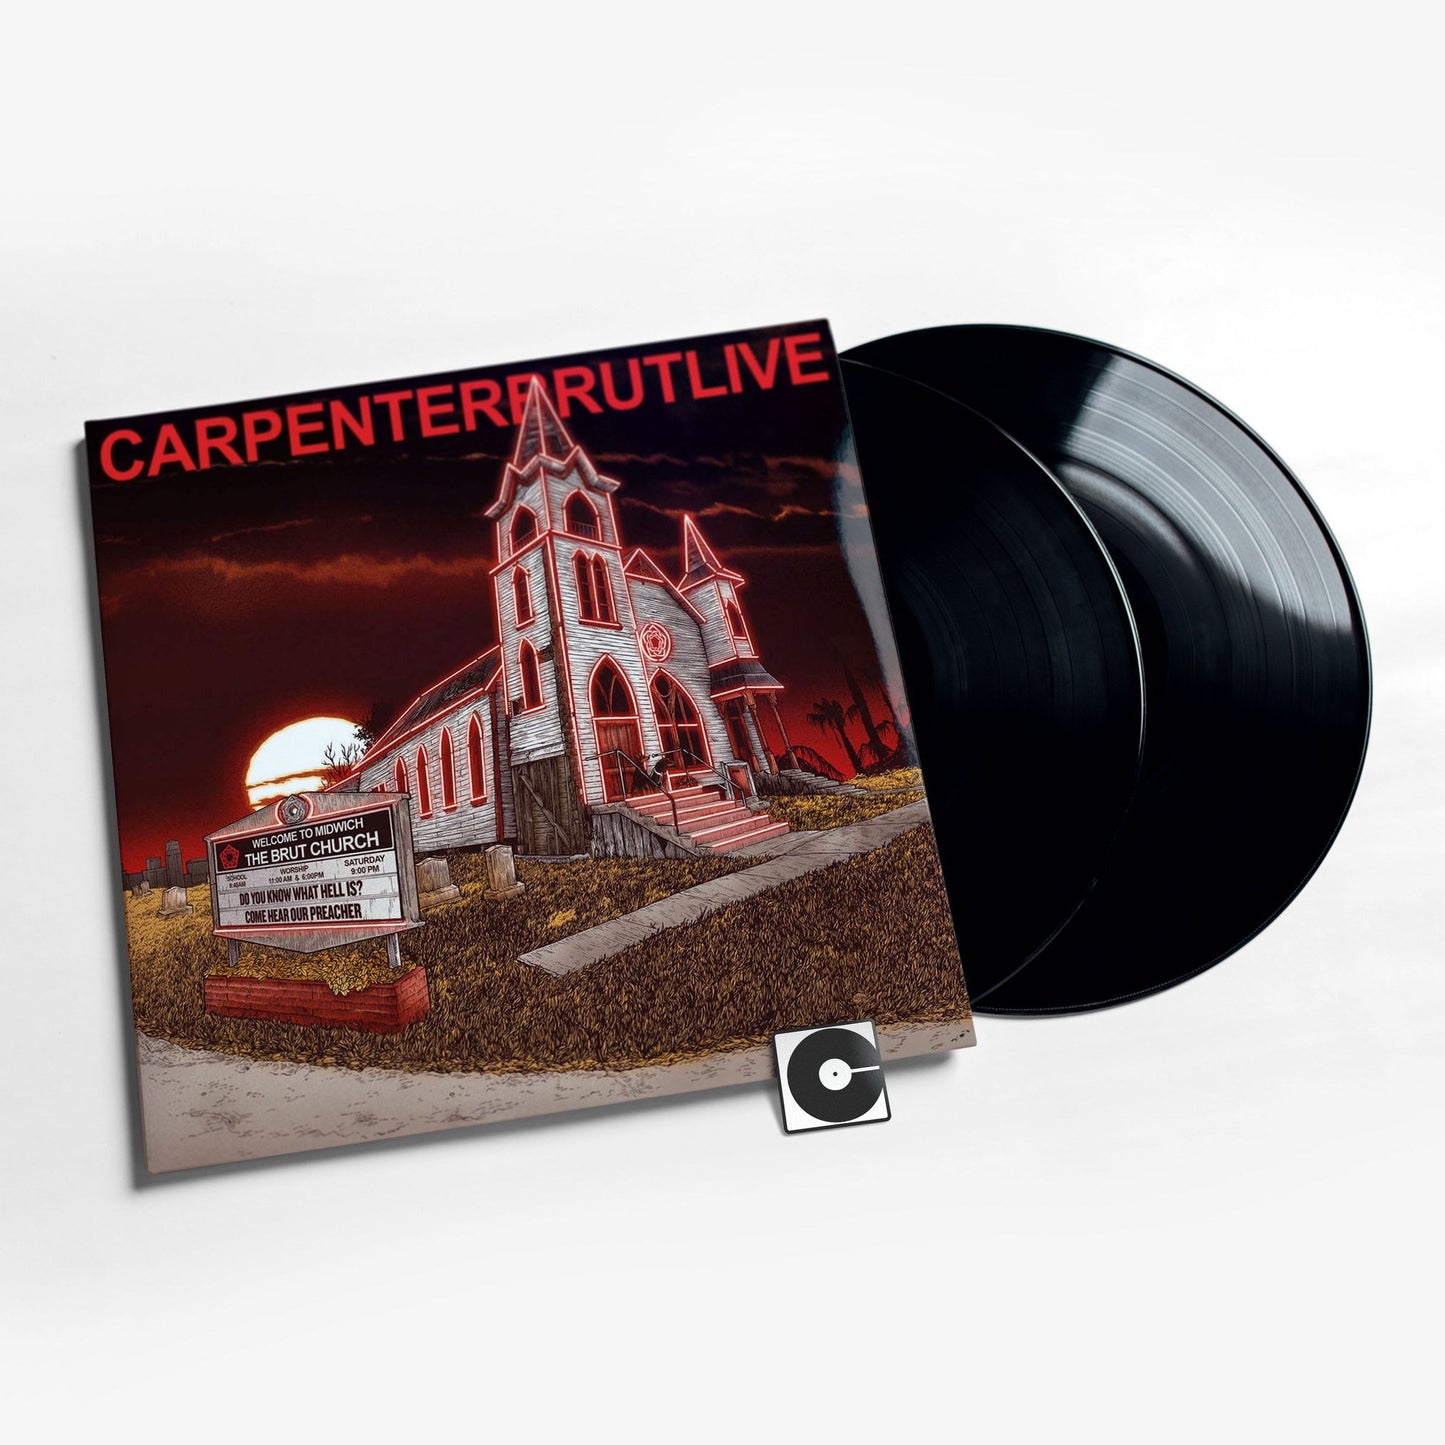 Carpenter Brut - "Carpenterbrutlive"